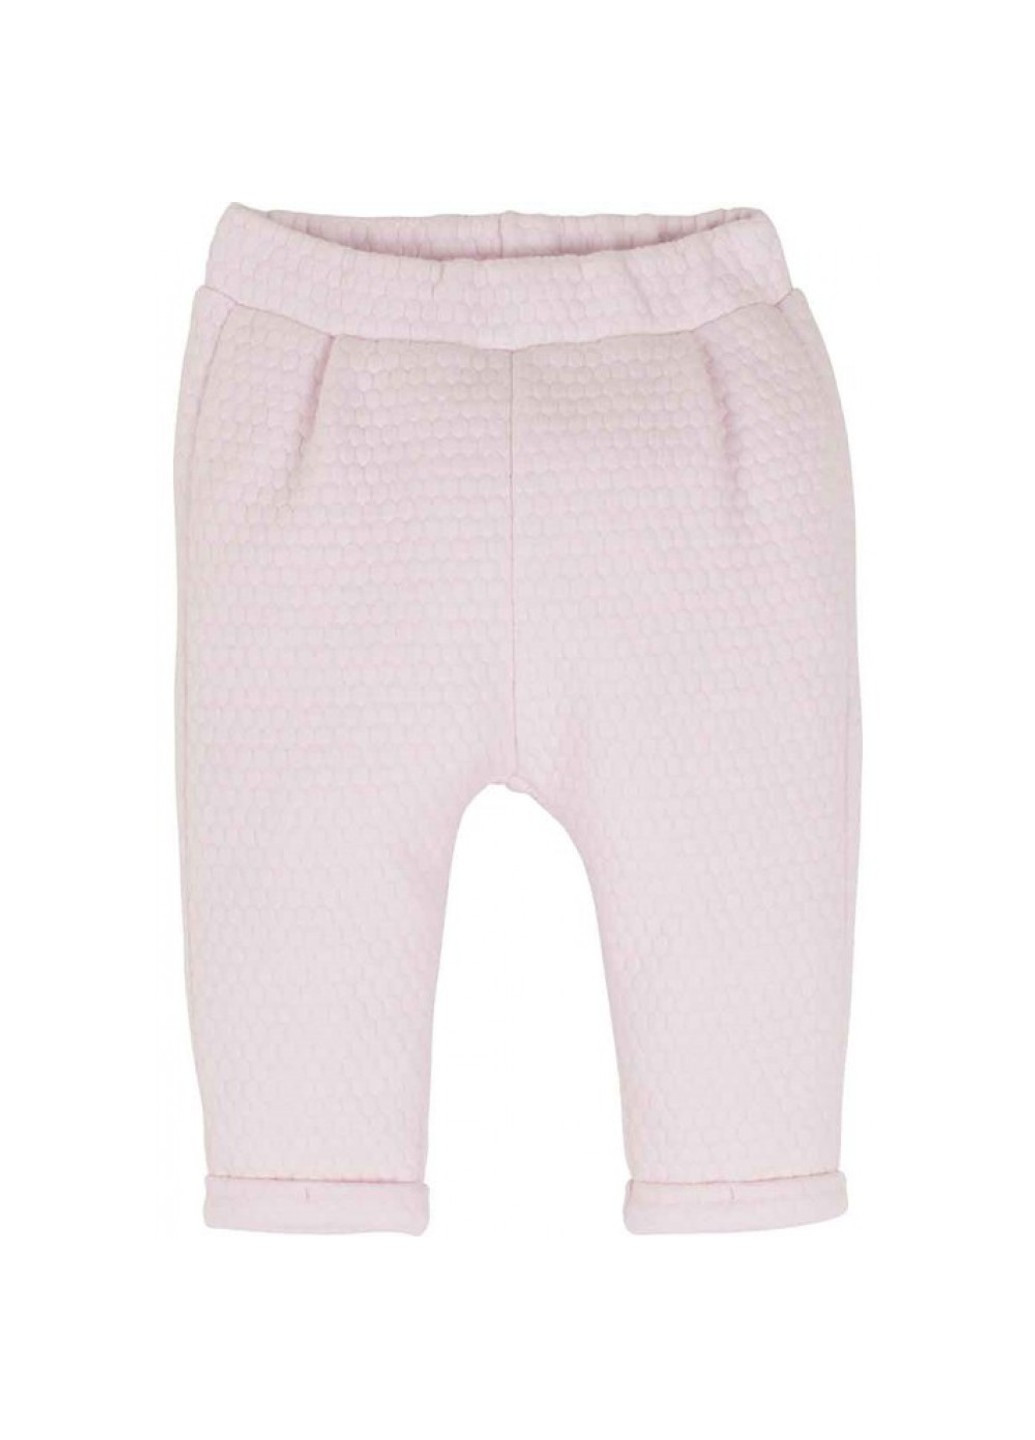 Розовый демисезонный комплект кофта + штаны mamino 15014 Idil Baby Mamino